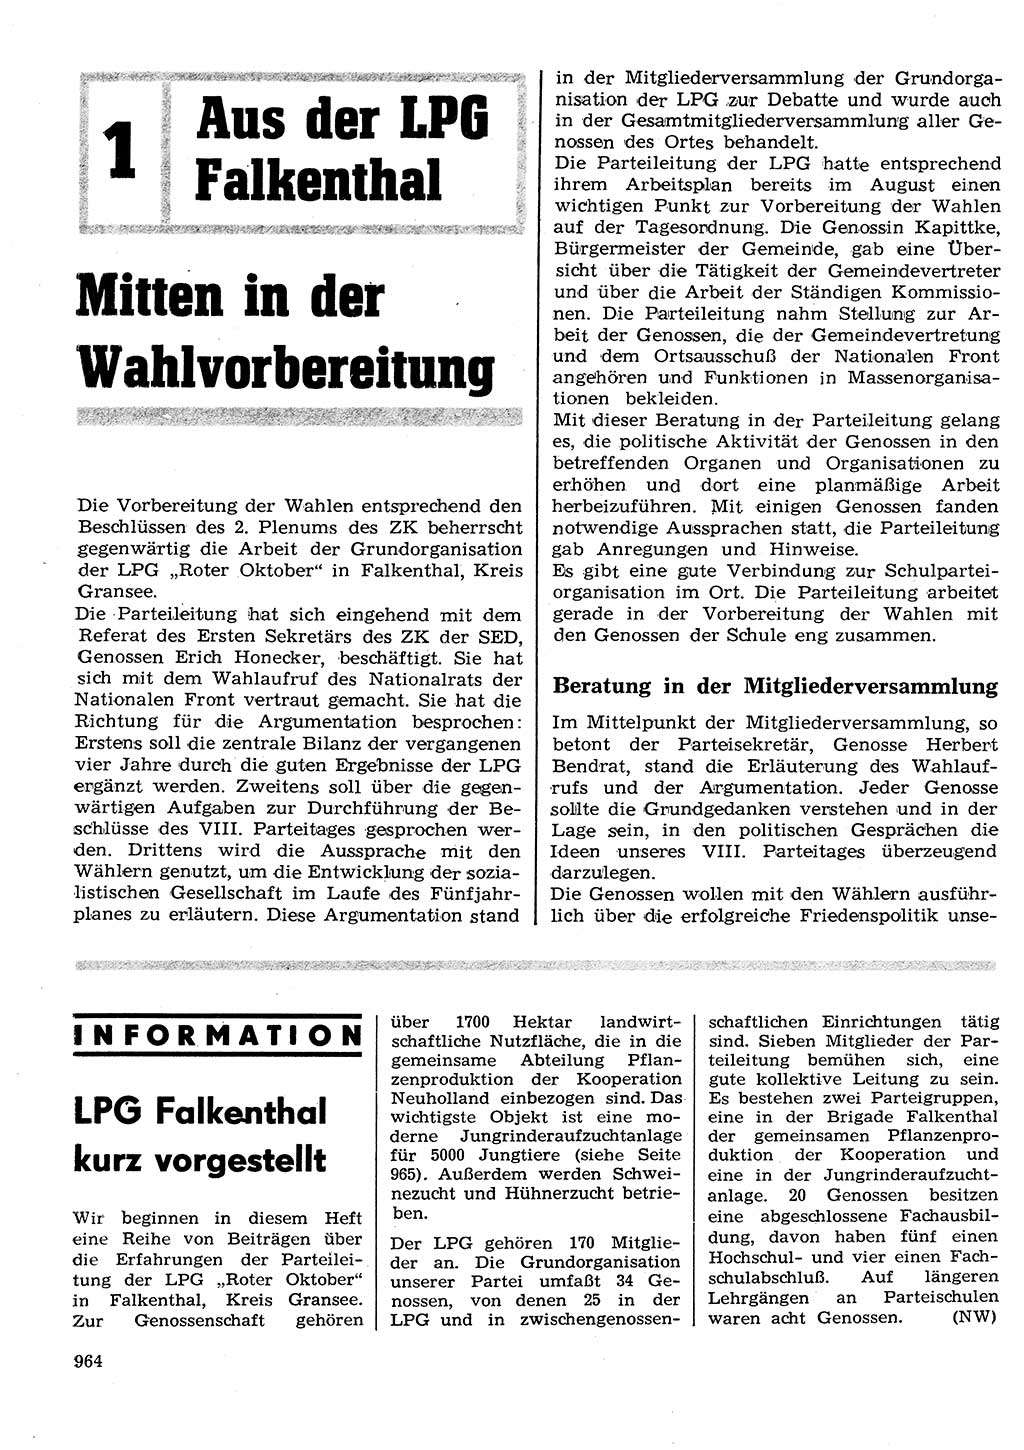 Neuer Weg (NW), Organ des Zentralkomitees (ZK) der SED (Sozialistische Einheitspartei Deutschlands) für Fragen des Parteilebens, 26. Jahrgang [Deutsche Demokratische Republik (DDR)] 1971, Seite 964 (NW ZK SED DDR 1971, S. 964)